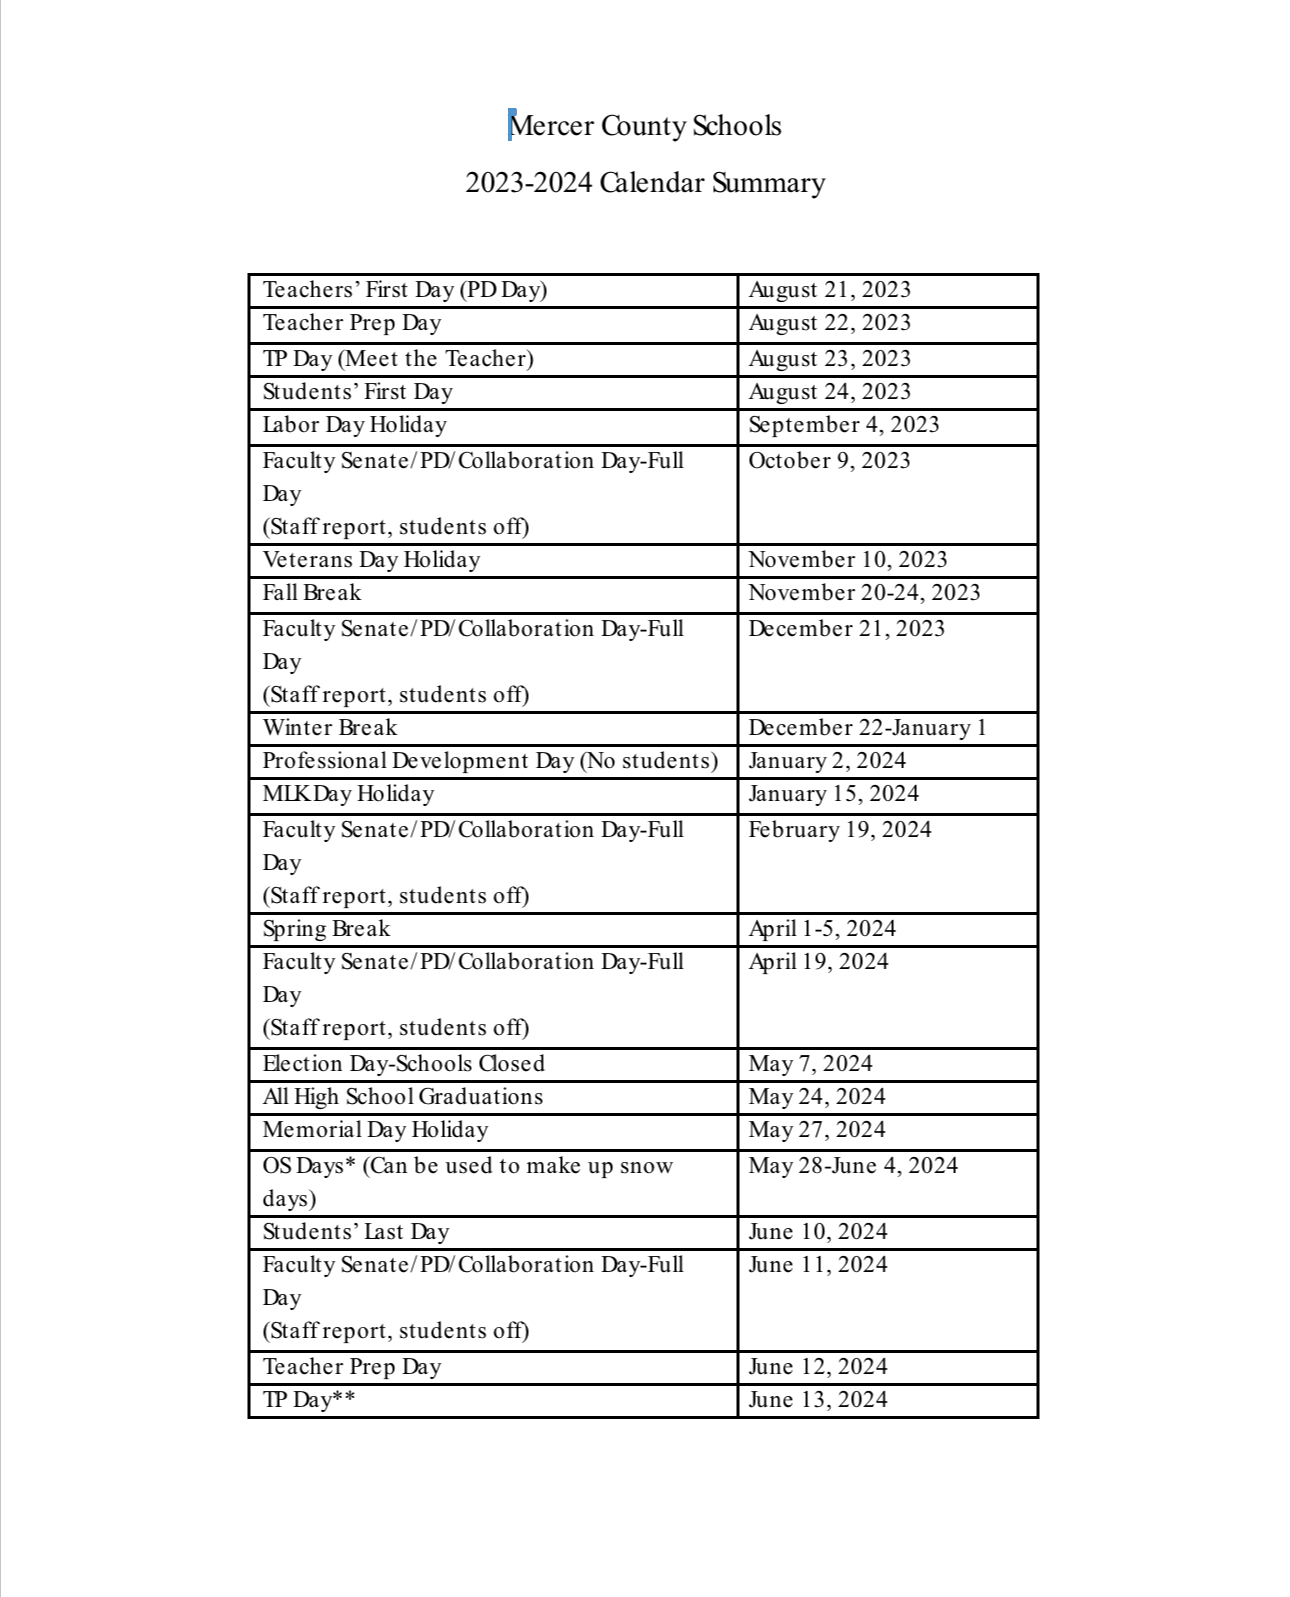 Mercer County Public Schools Calendar 2024 and 2025